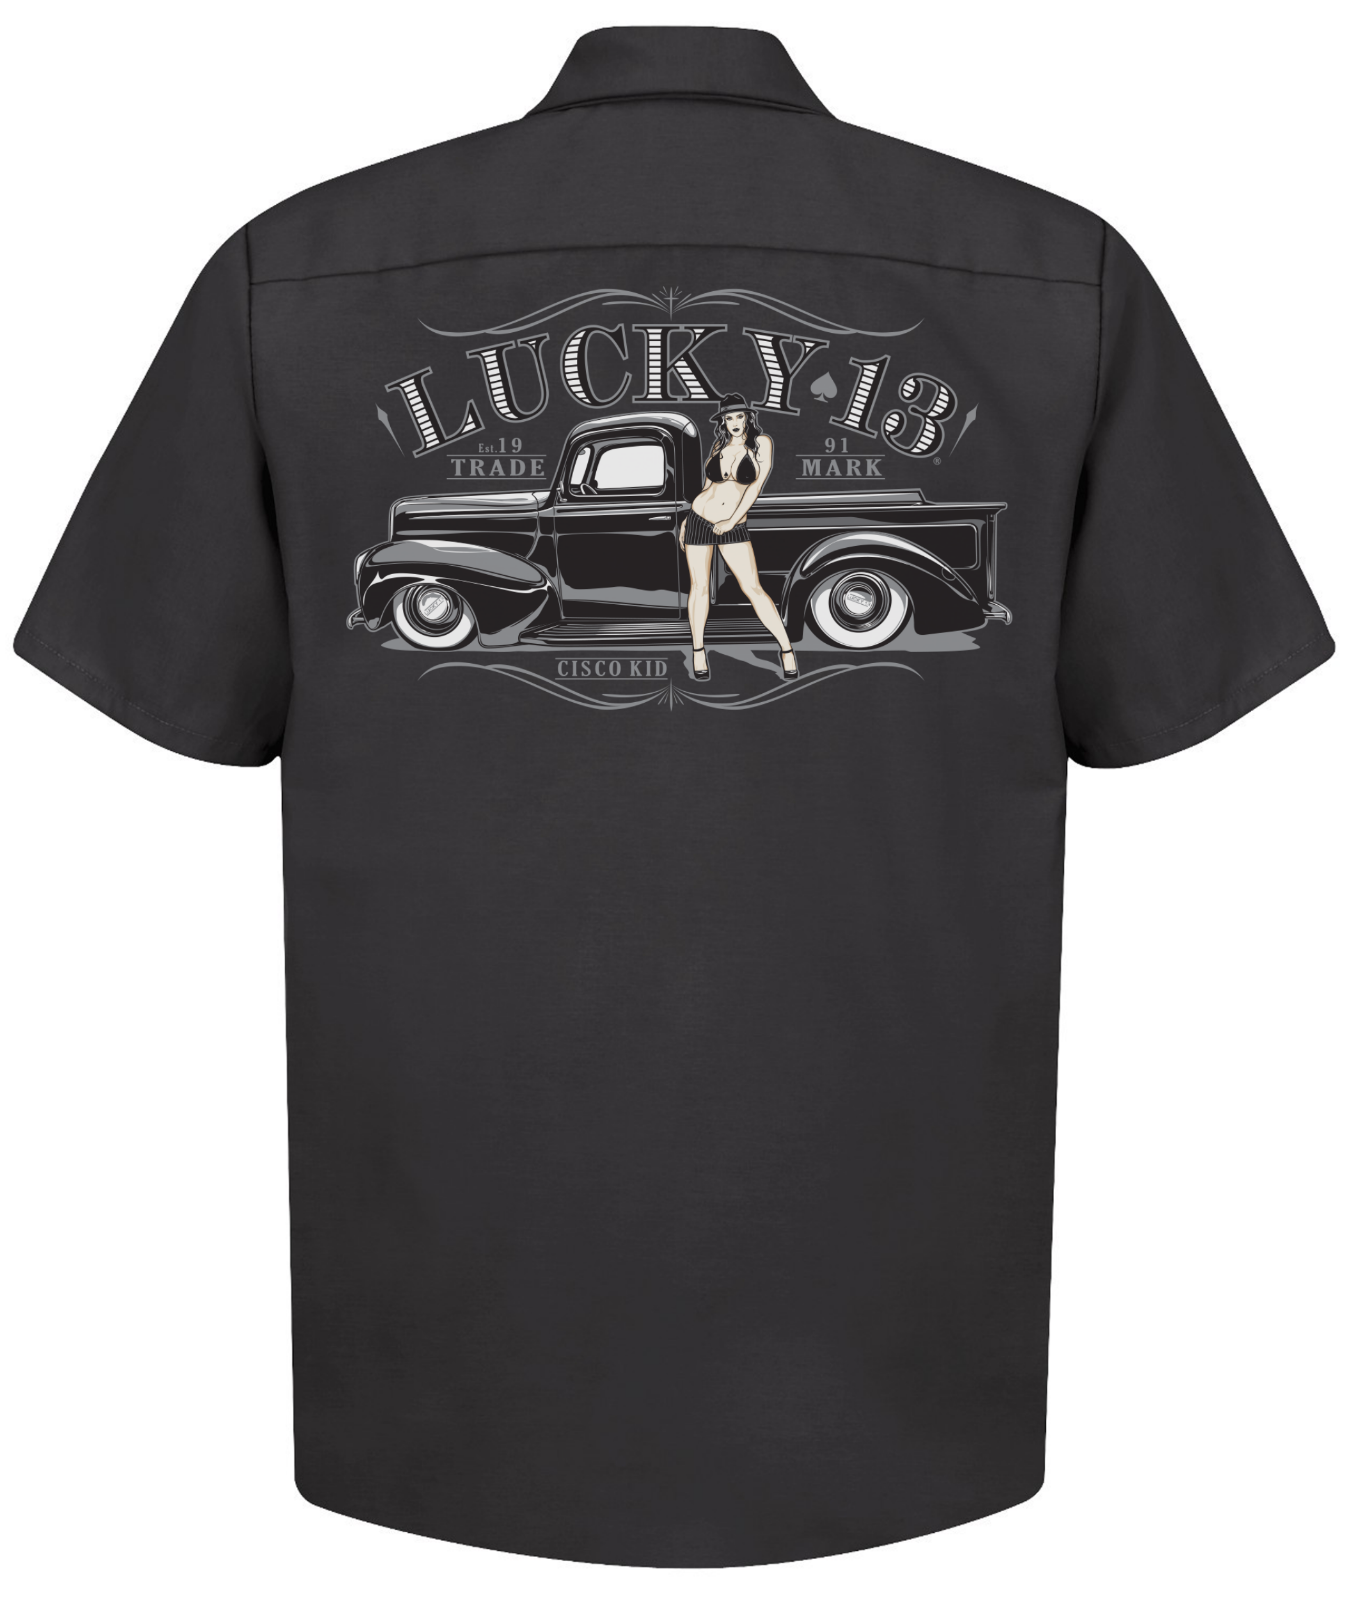 Lucky 13 Cisco Kid Hot Rod Pinup Rockabilly Cars Button Down Work Shirt ...